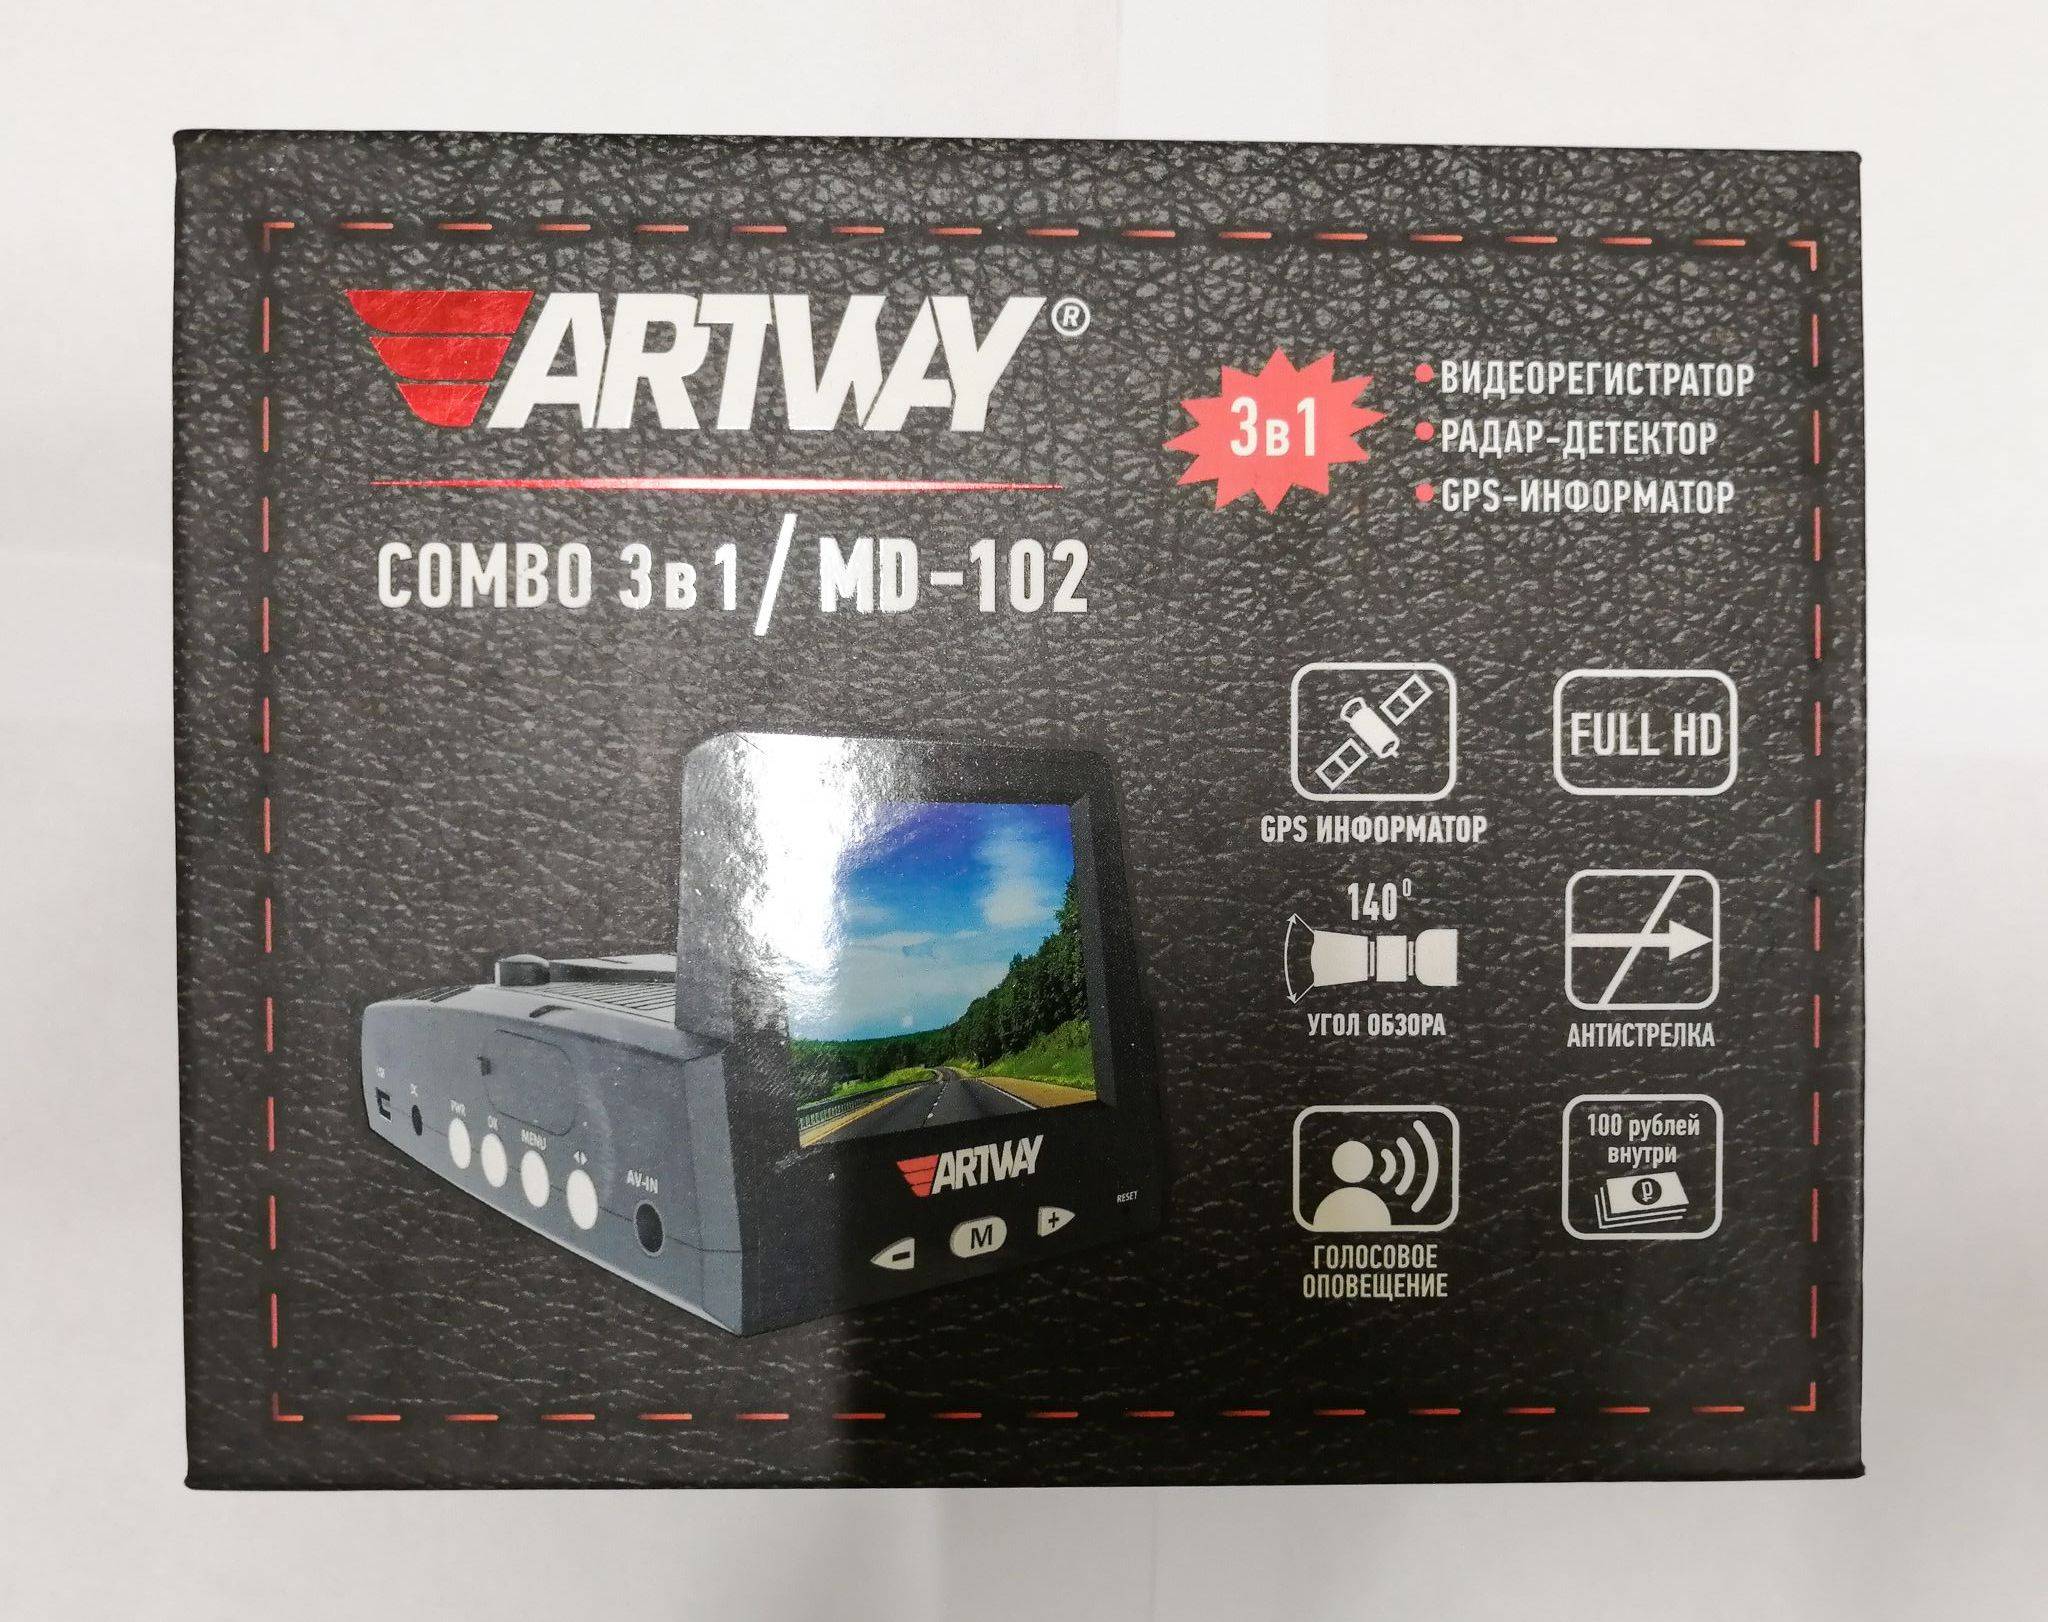 Отзывы artway md-911 | видеорегистраторы artway | подробные характеристики, отзывы покупателей